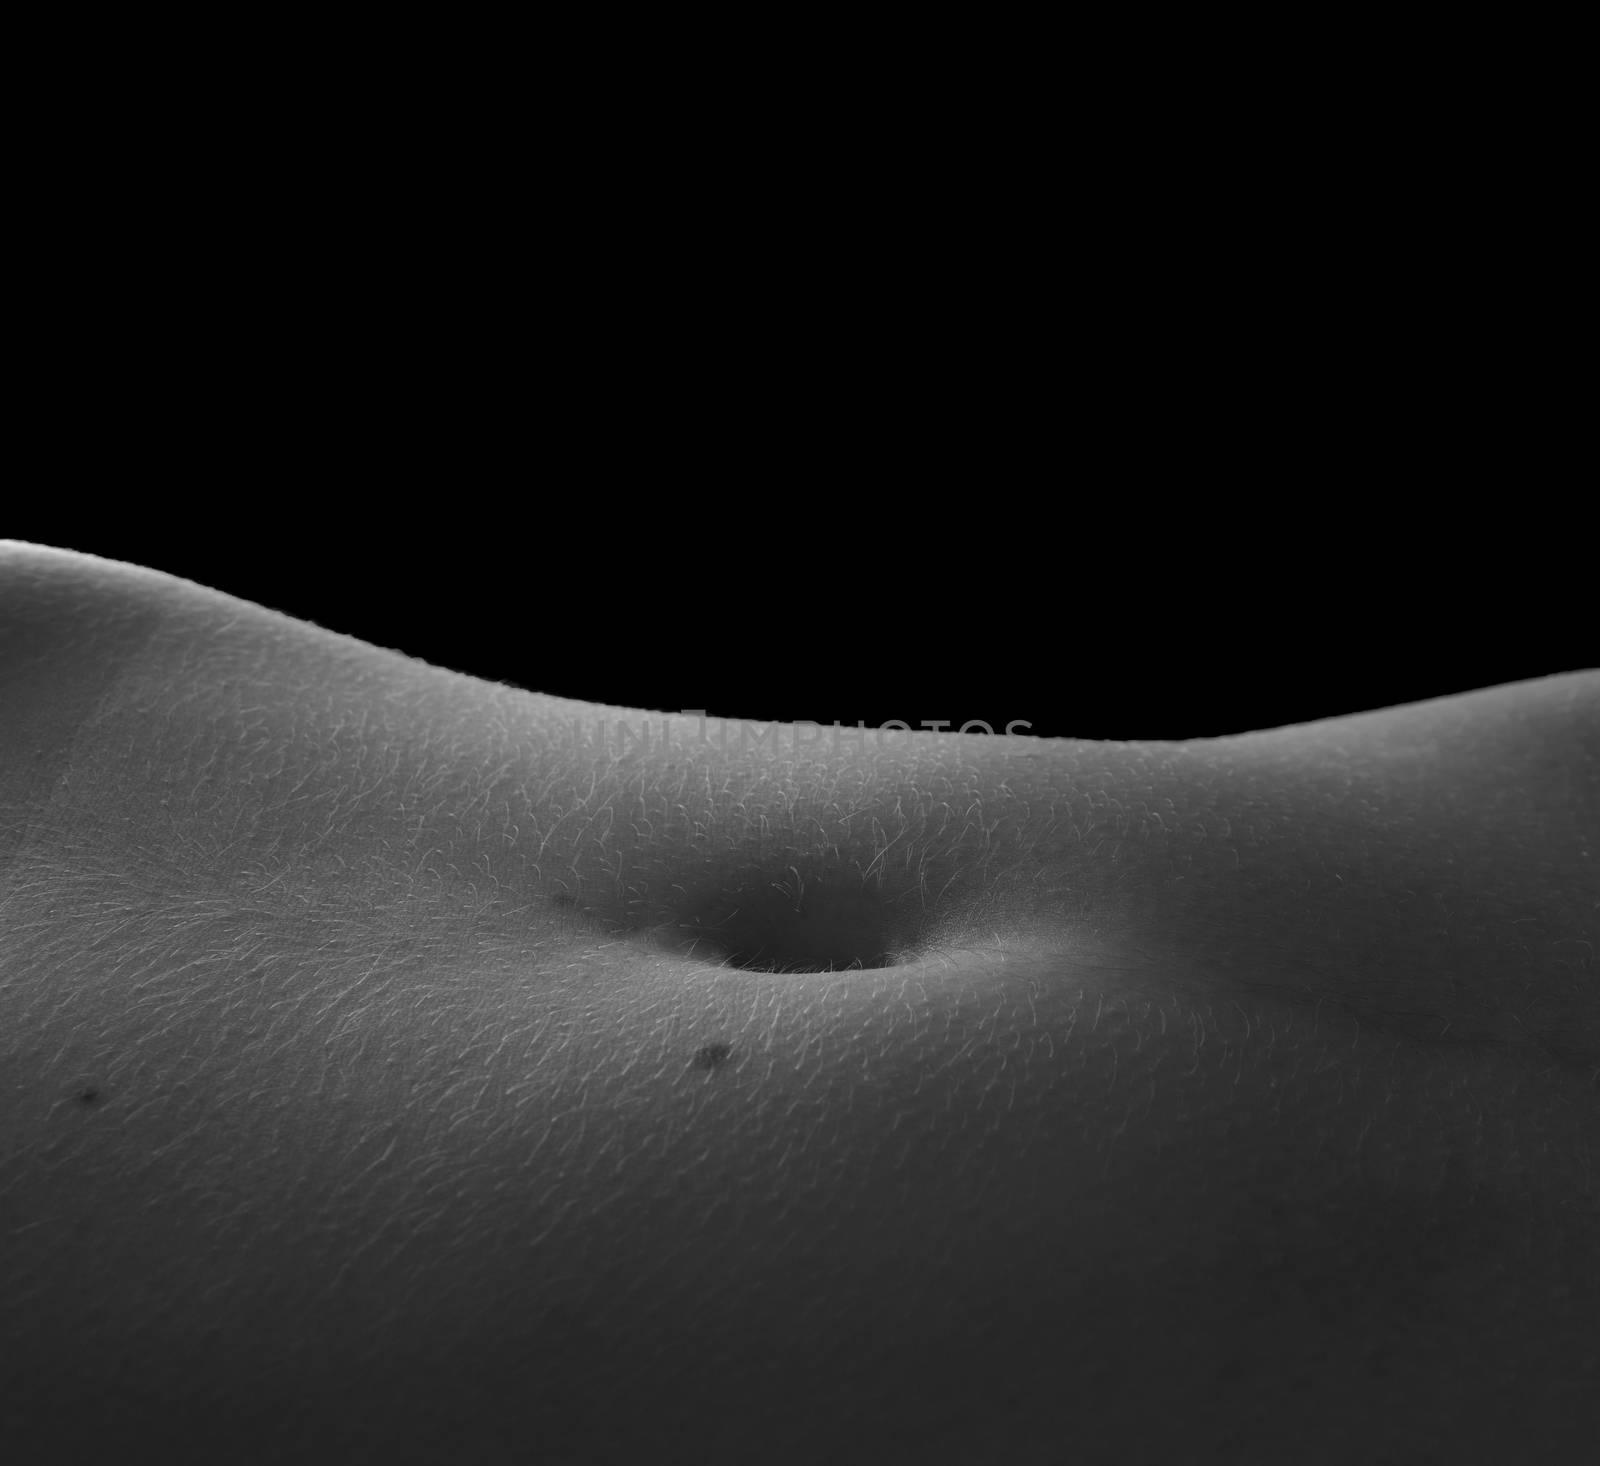 Human female navel by rodrigobellizzi